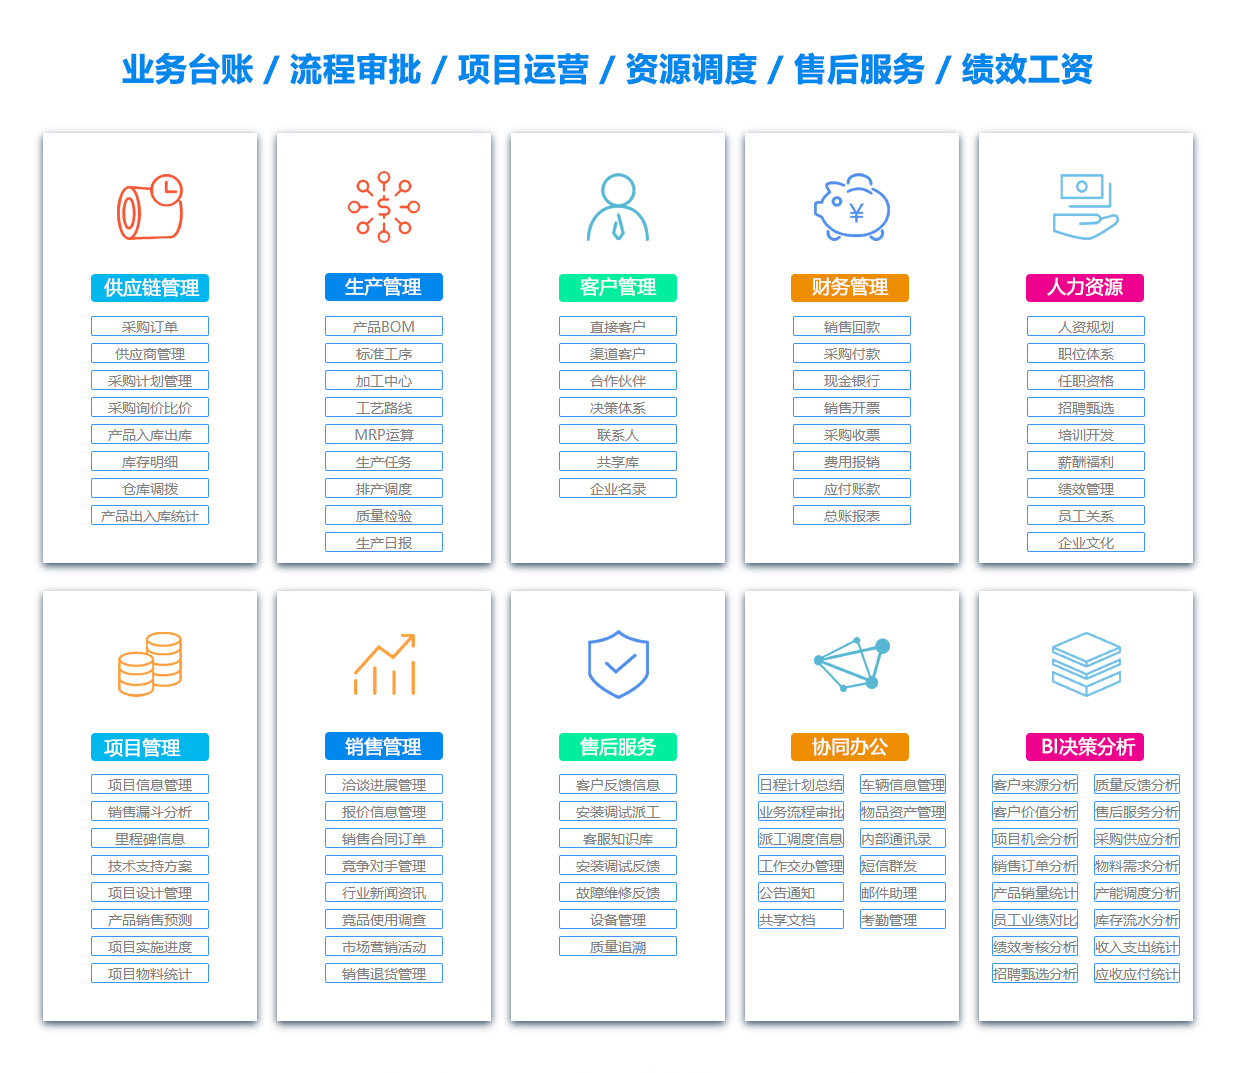 郑州PDM:产品数据管理系统